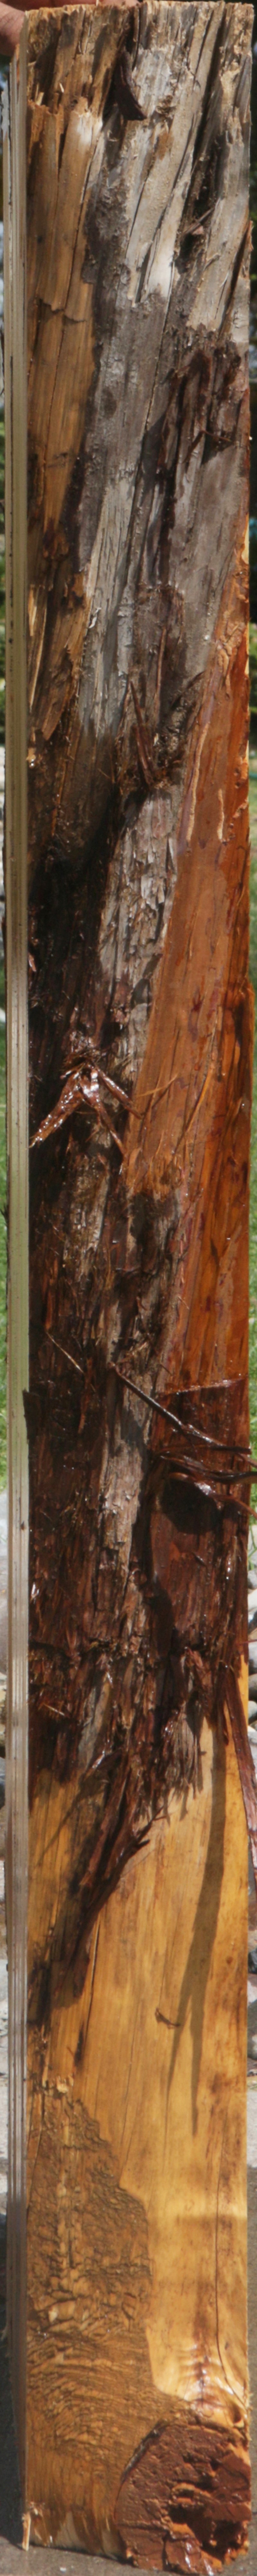 Rustic Juniper Live Edge Lumber